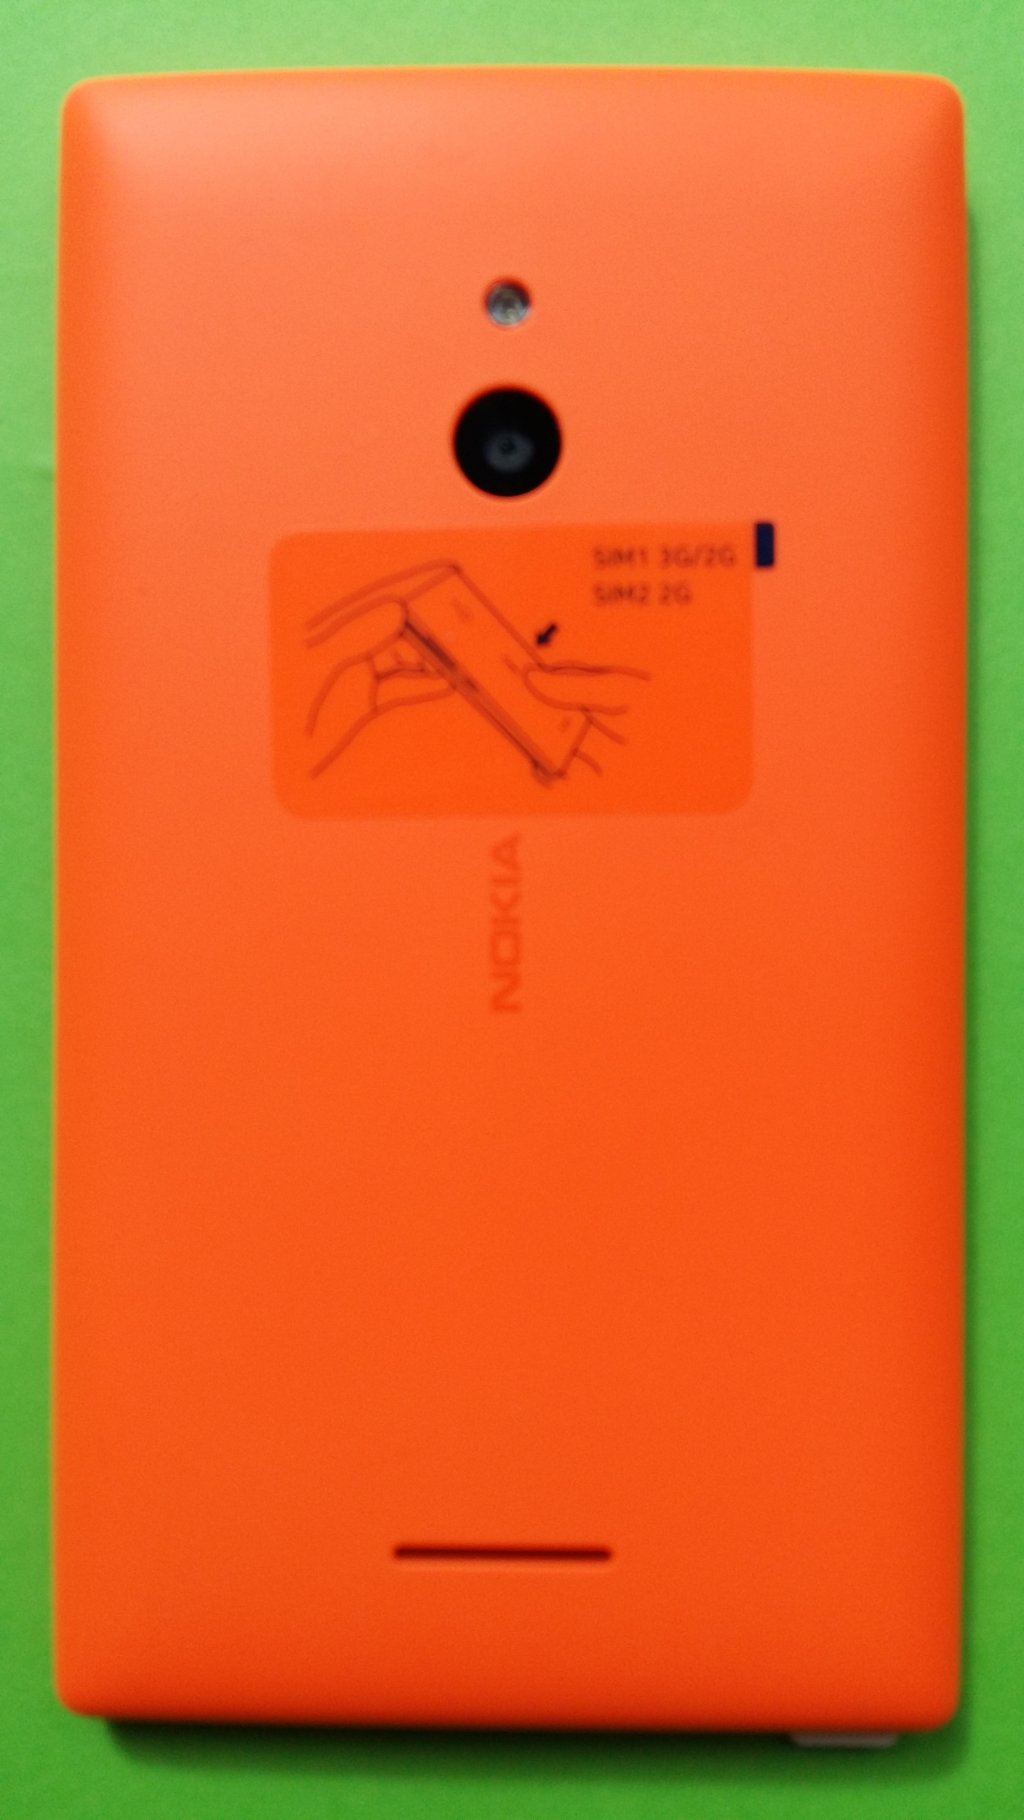 image-8797154-Nokia_1030_XL_Lumia_(1)2.w640.jpg